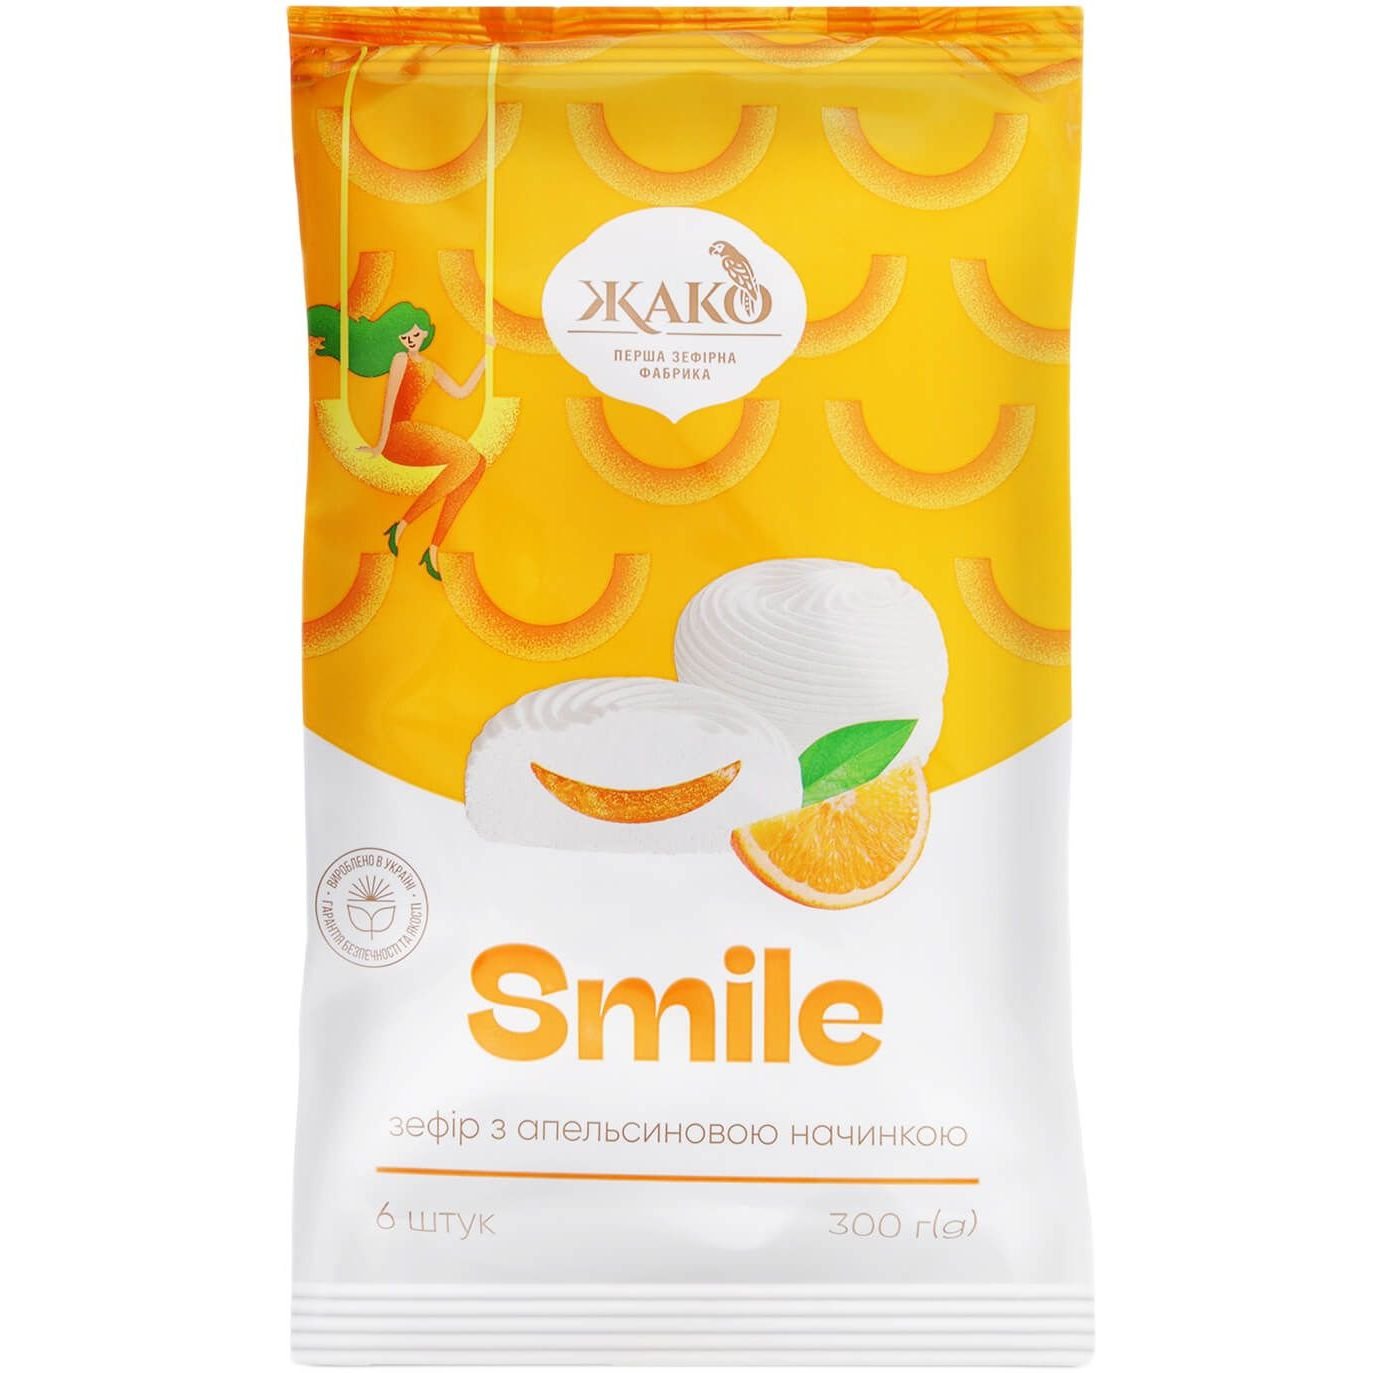 Зефір Жако Smile з апельсиновою начинкою, 300 г (723632) - фото 1